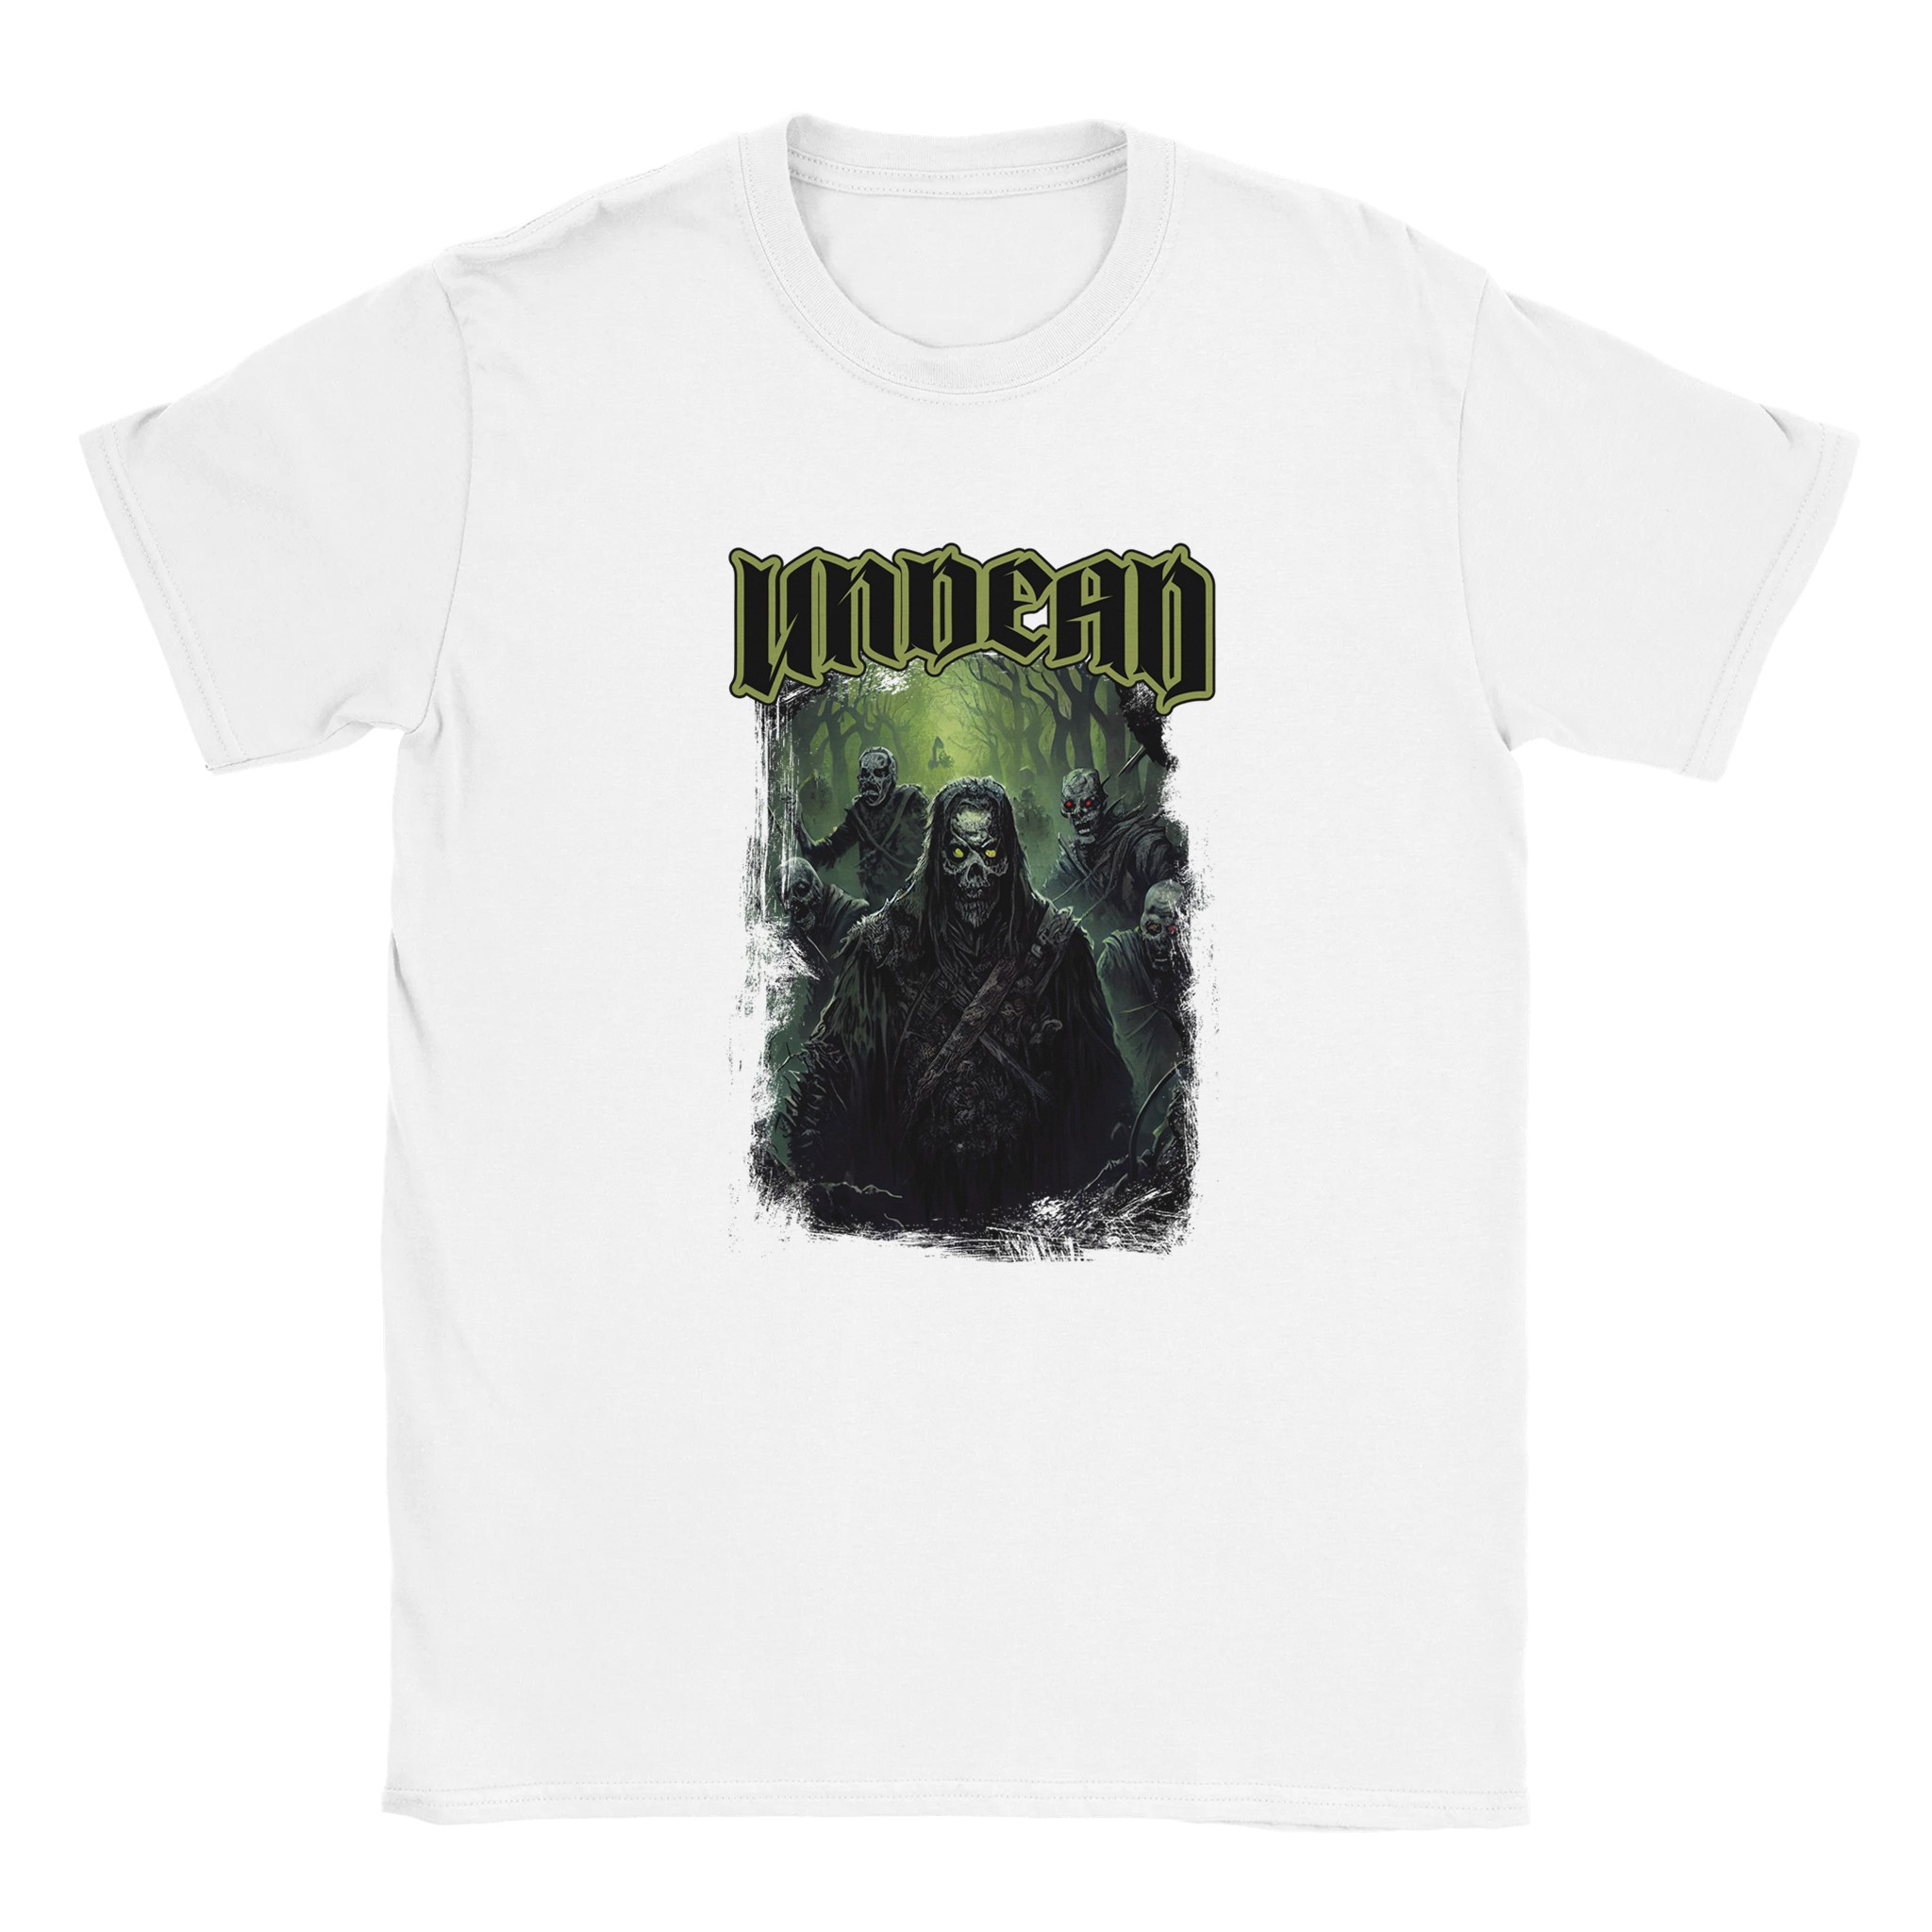 Undead Tshirt design